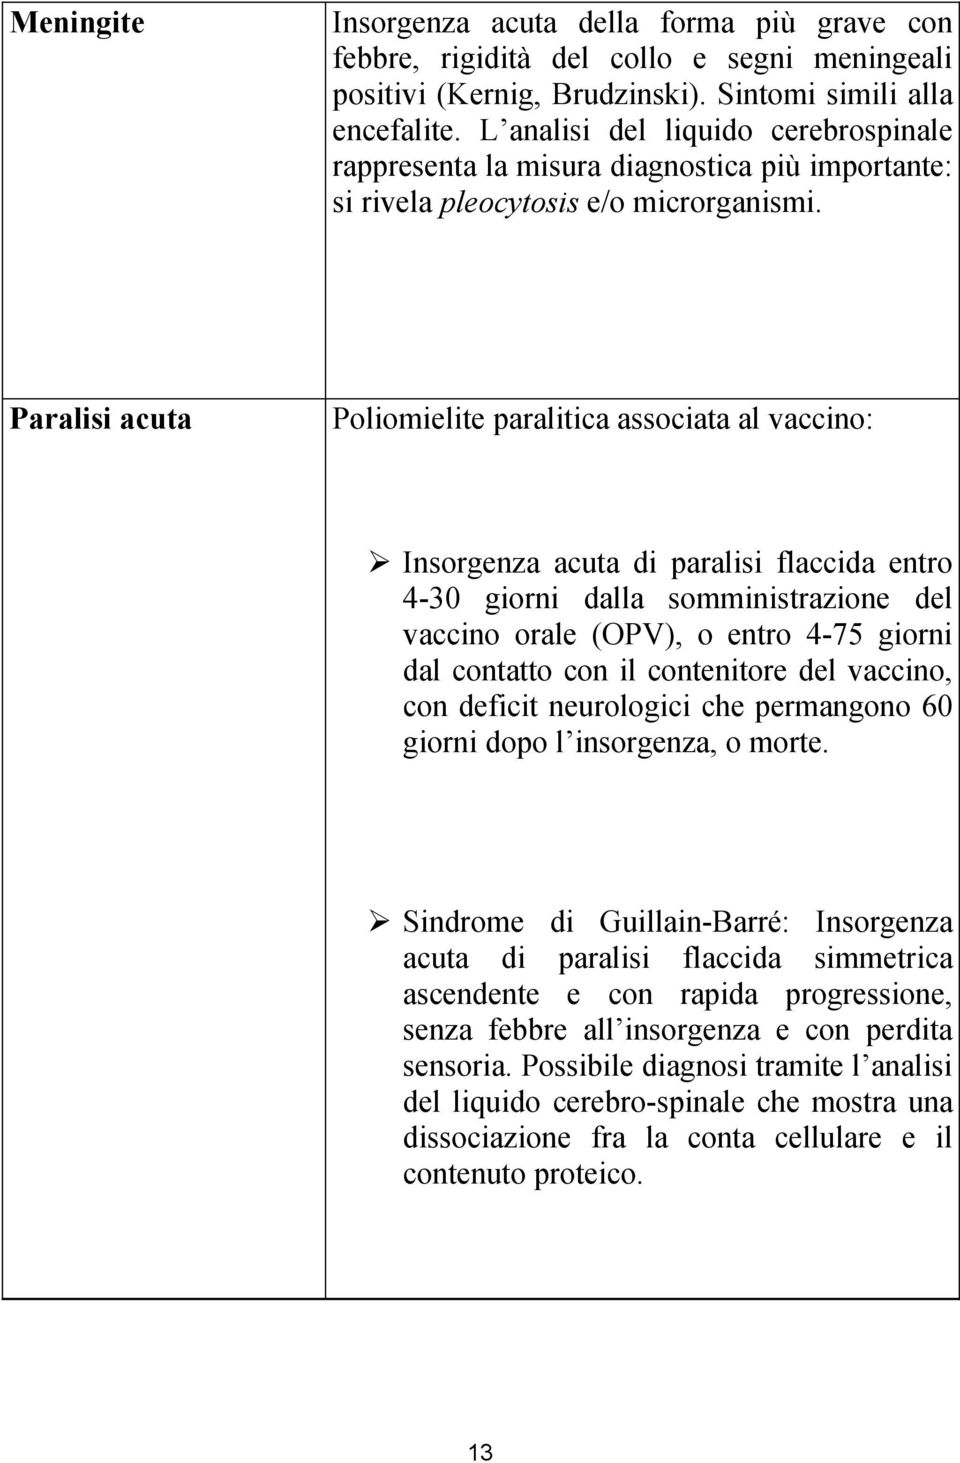 Paralisi acuta Poliomielite paralitica associata al vaccino: Insorgenza acuta di paralisi flaccida entro 4-30 giorni dalla somministrazione del vaccino orale (OPV), o entro 4-75 giorni dal contatto